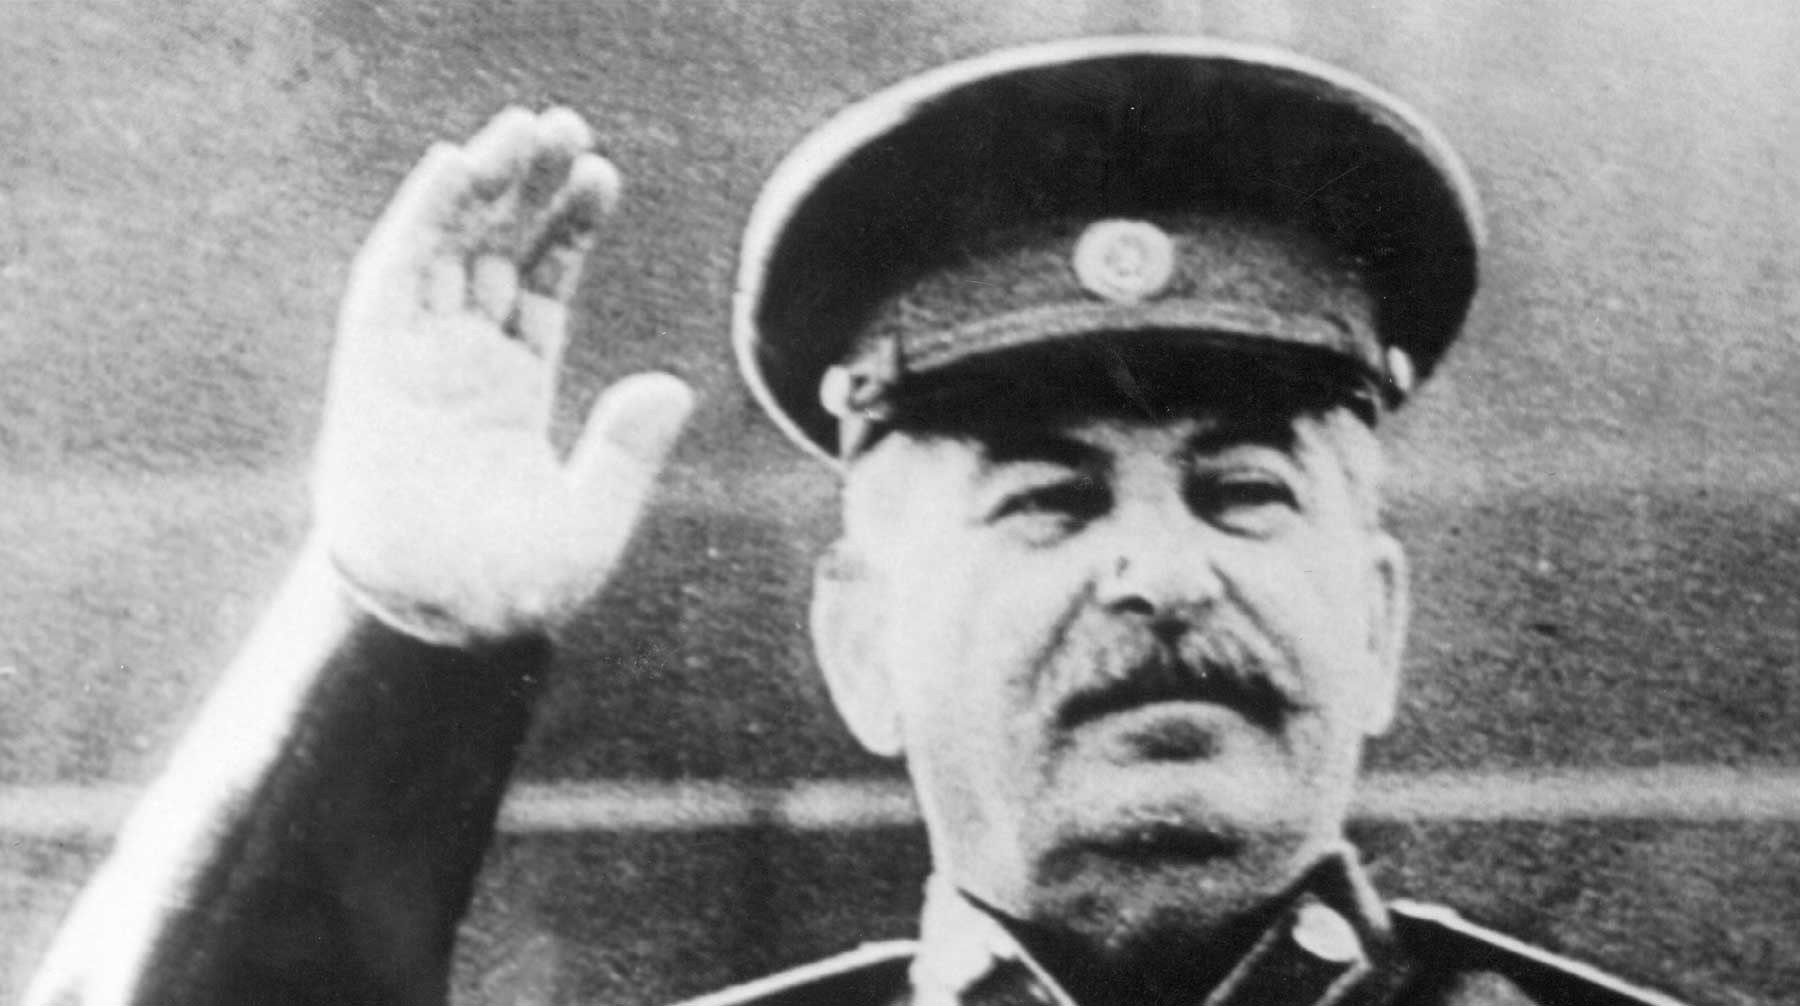 Dailystorm - Сибирские коммунисты, рэперы и диджеи выступят во славу Сталина